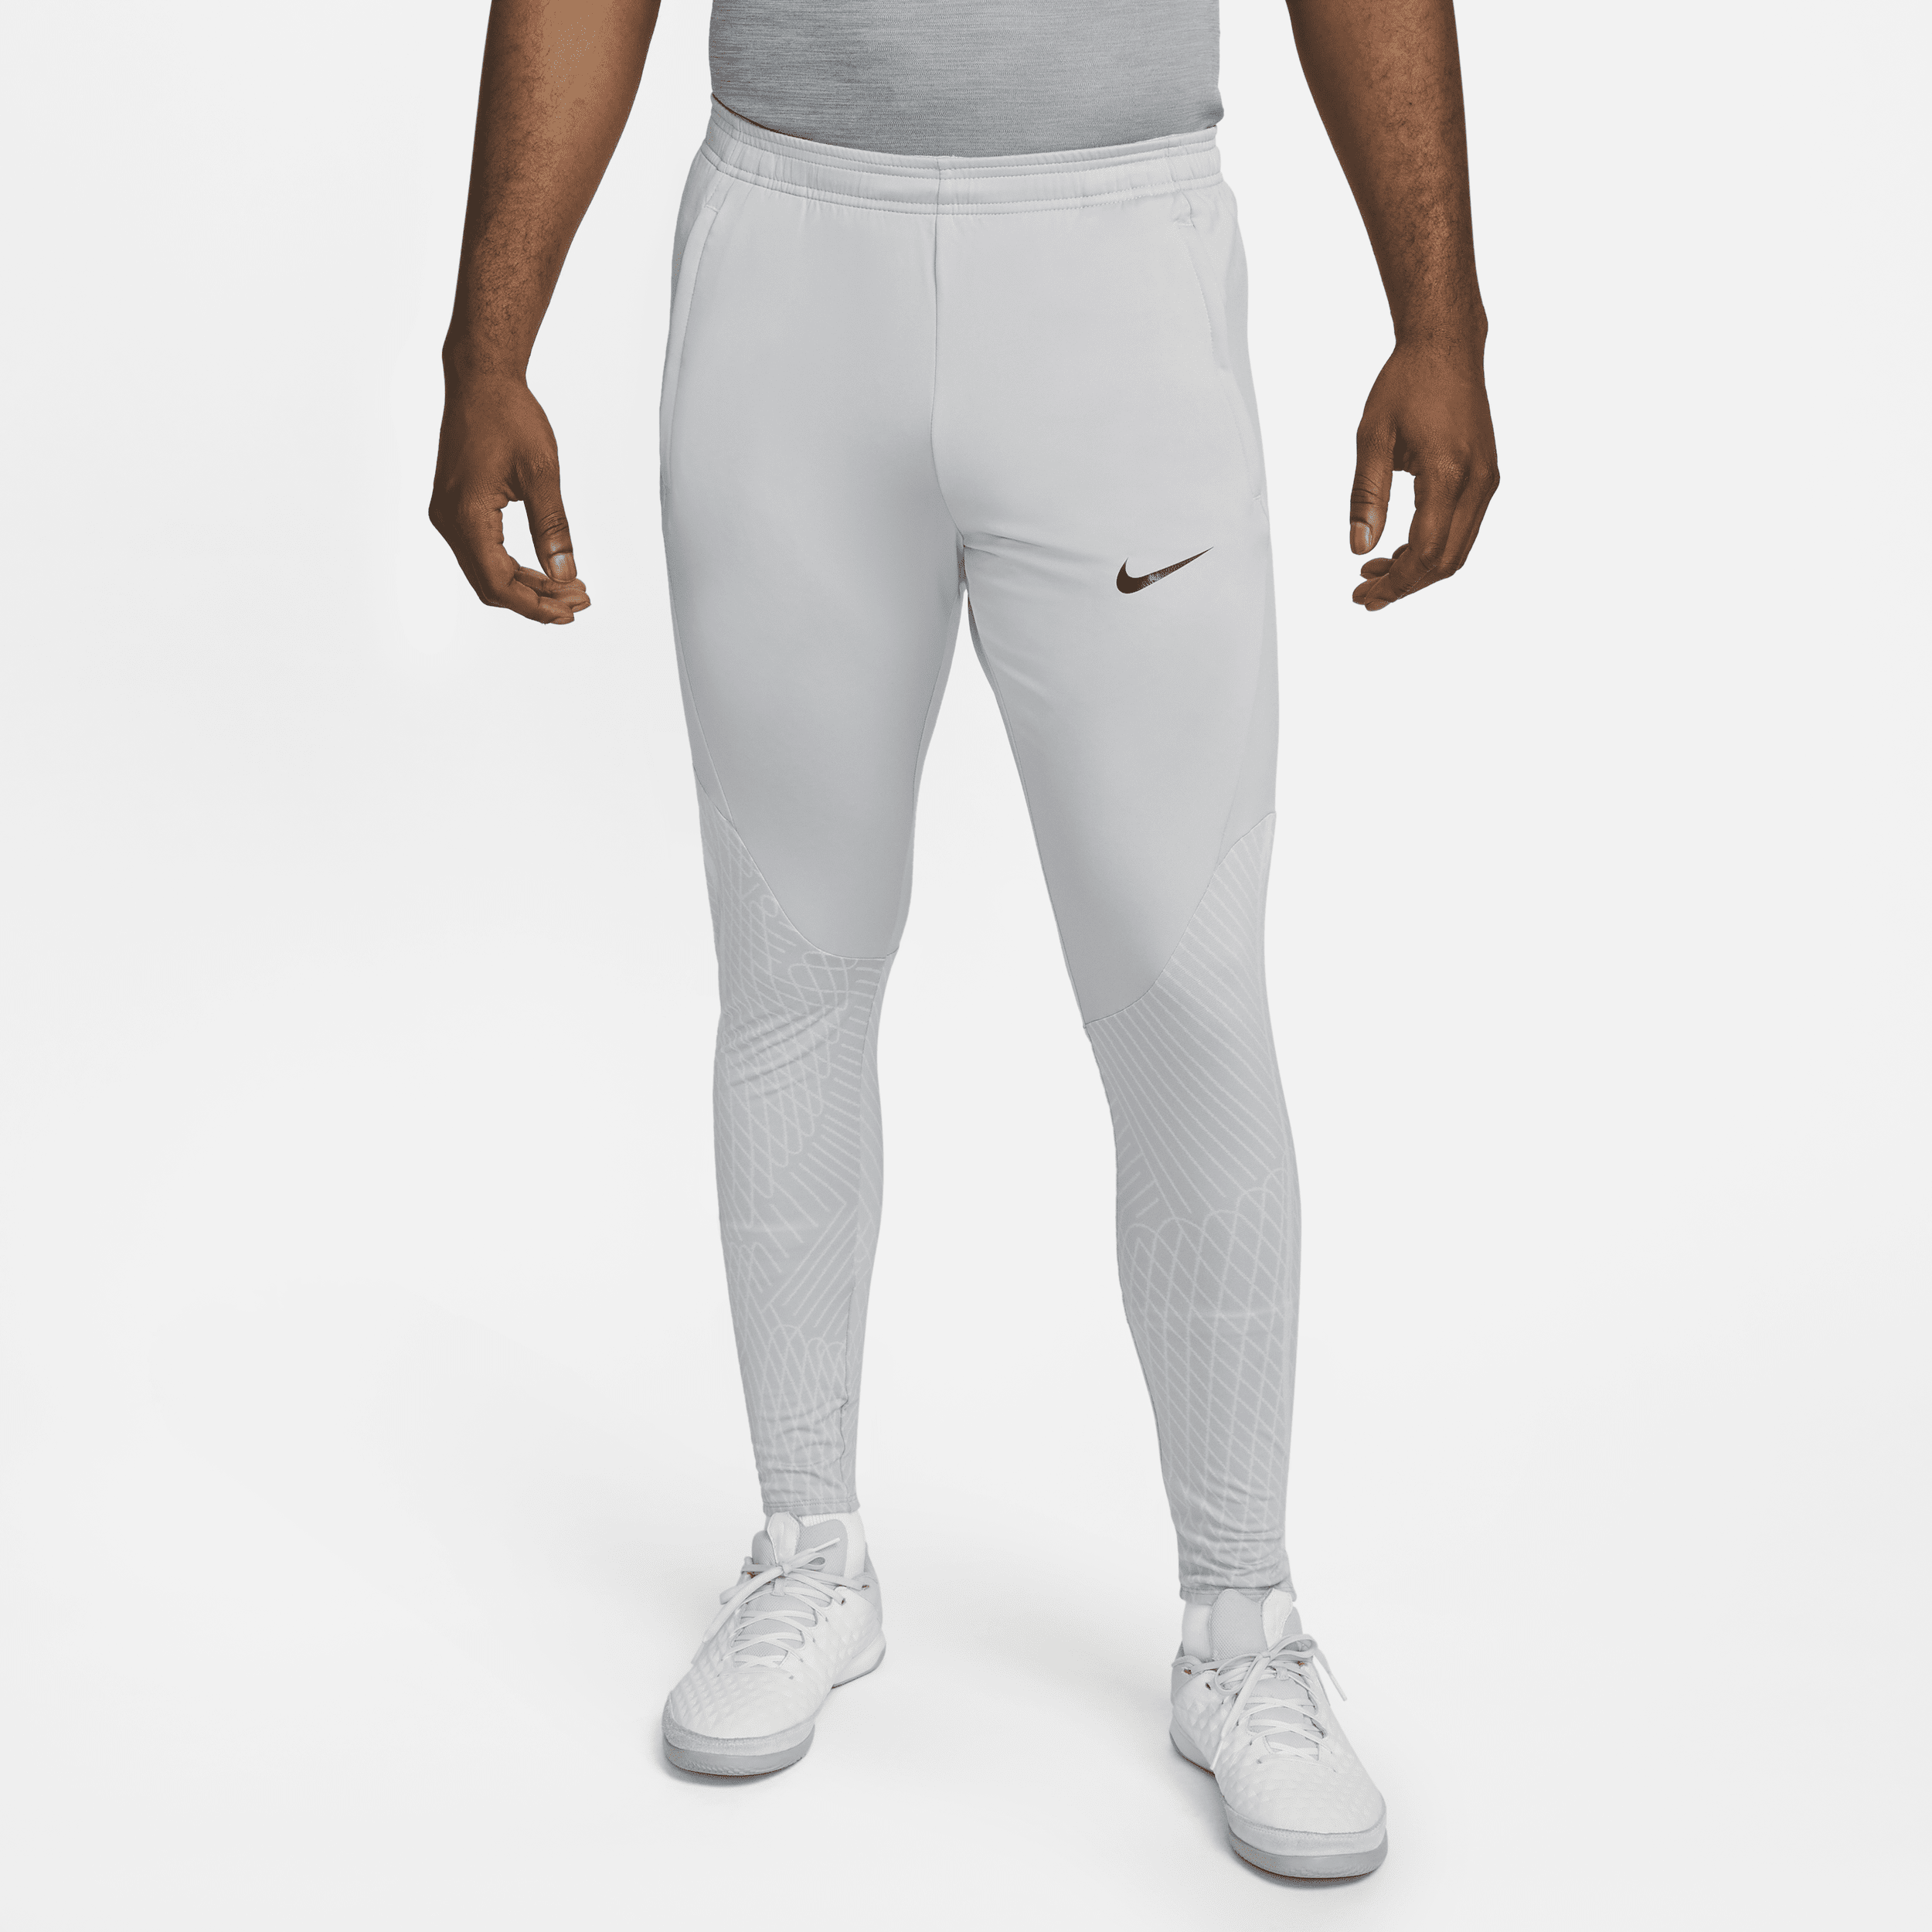 Nike Dri-FIT Strike-fodboldbukser til mænd - grå